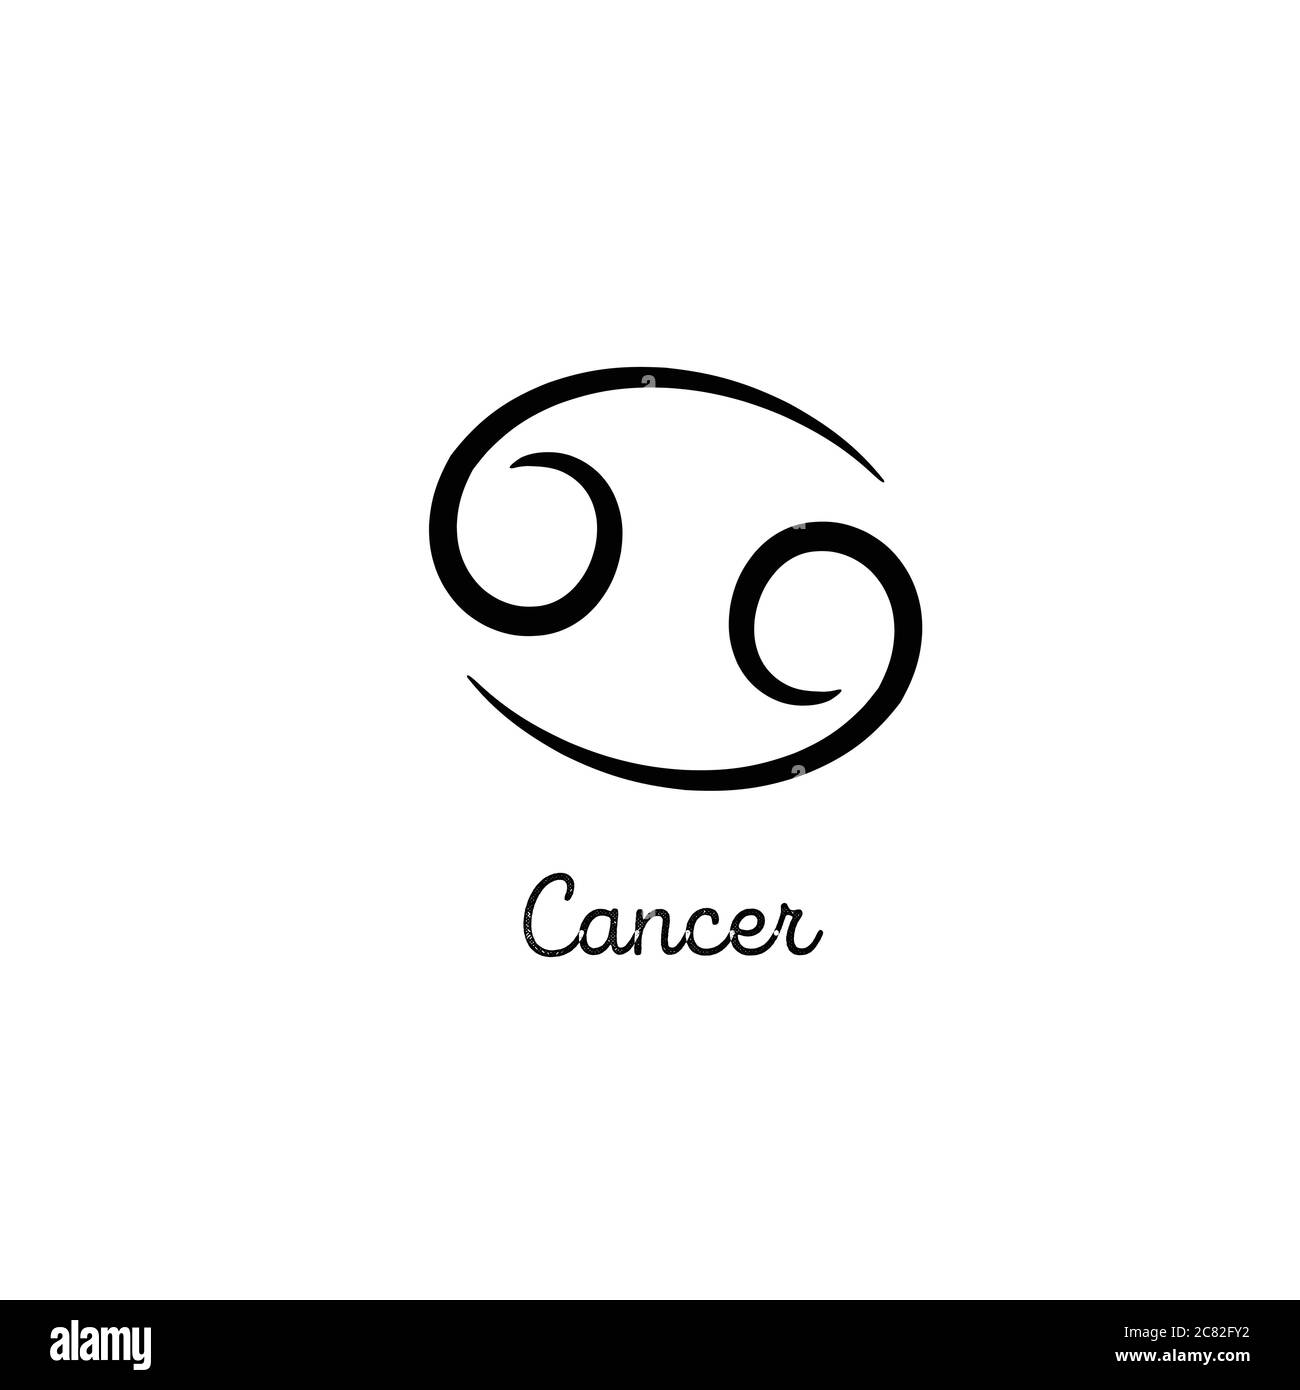 Illustrazione zodiaca del cancro disegnata a mano. Icona zodiacale cancro semplice. Simbolo del vettore zodiaco del cancro del tatuaggio. Segno di cancro del disegno della mano Illustrazione Vettoriale